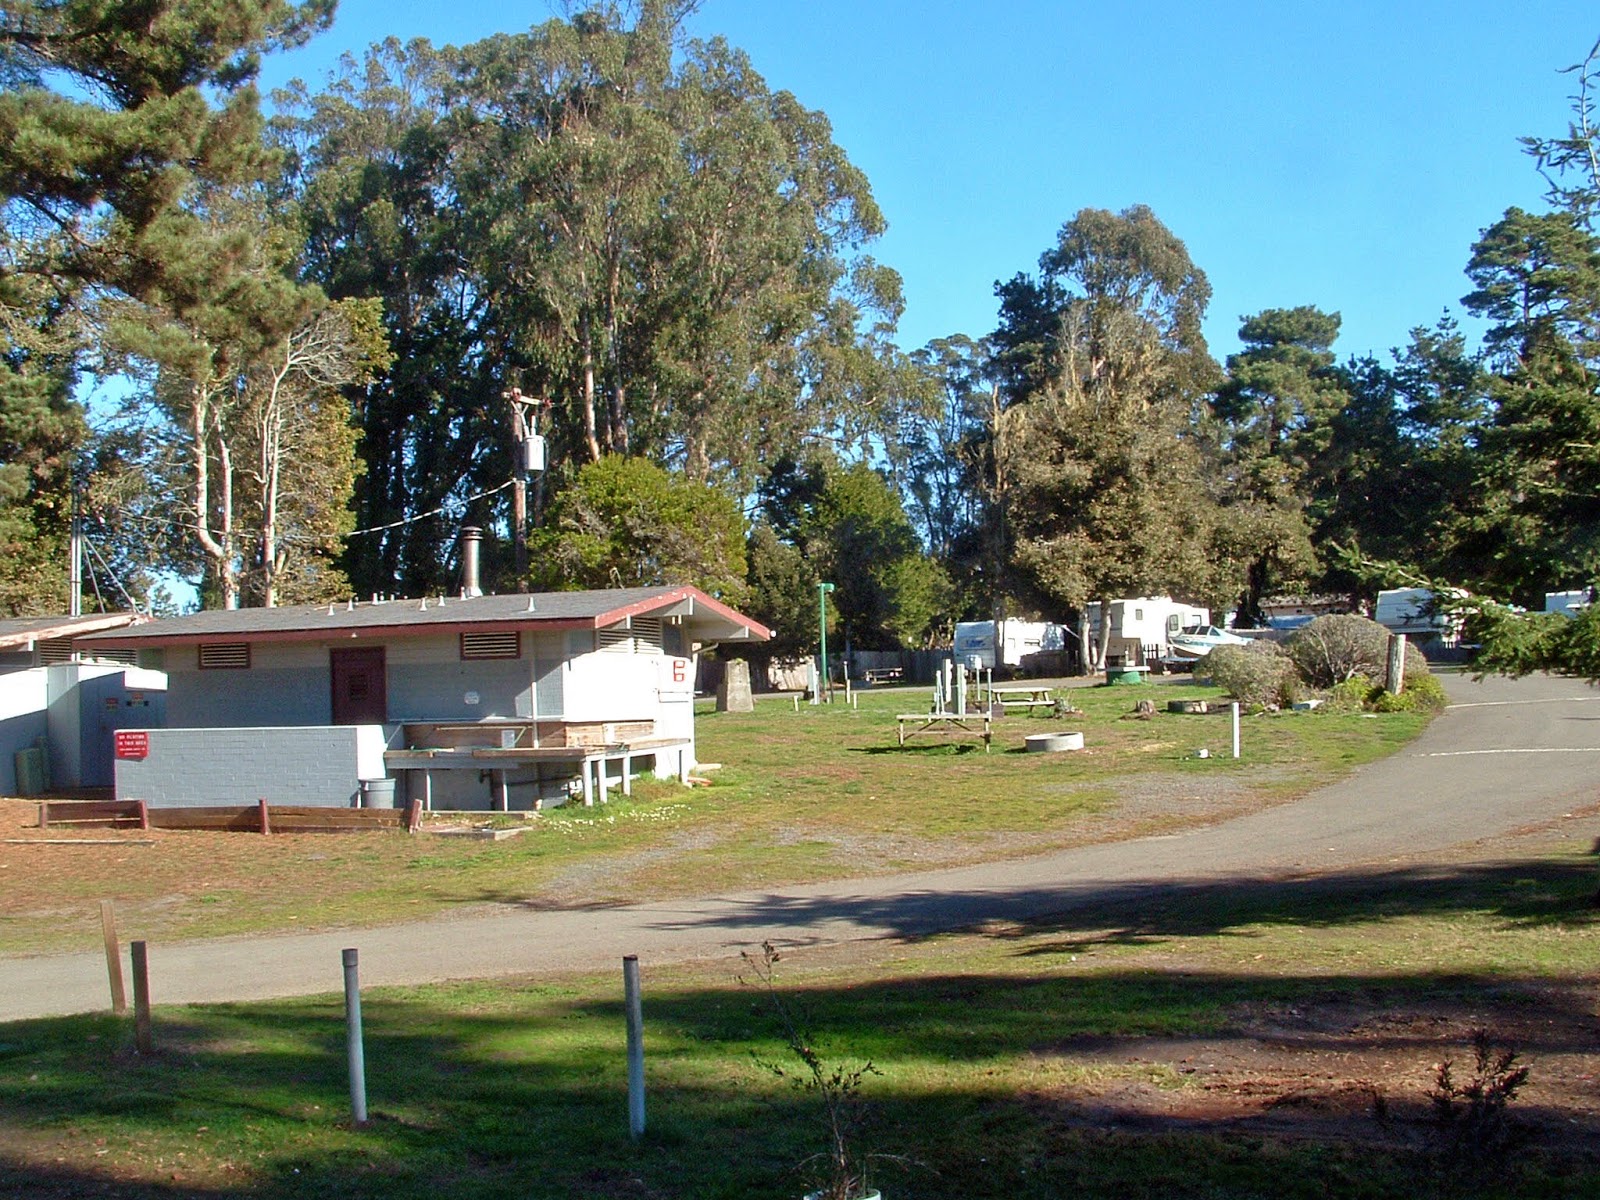 Hidden Pines RV Park Campground - Fort Bragg California : Fort Bragg Fort Bragg Rv Camping On The Beach